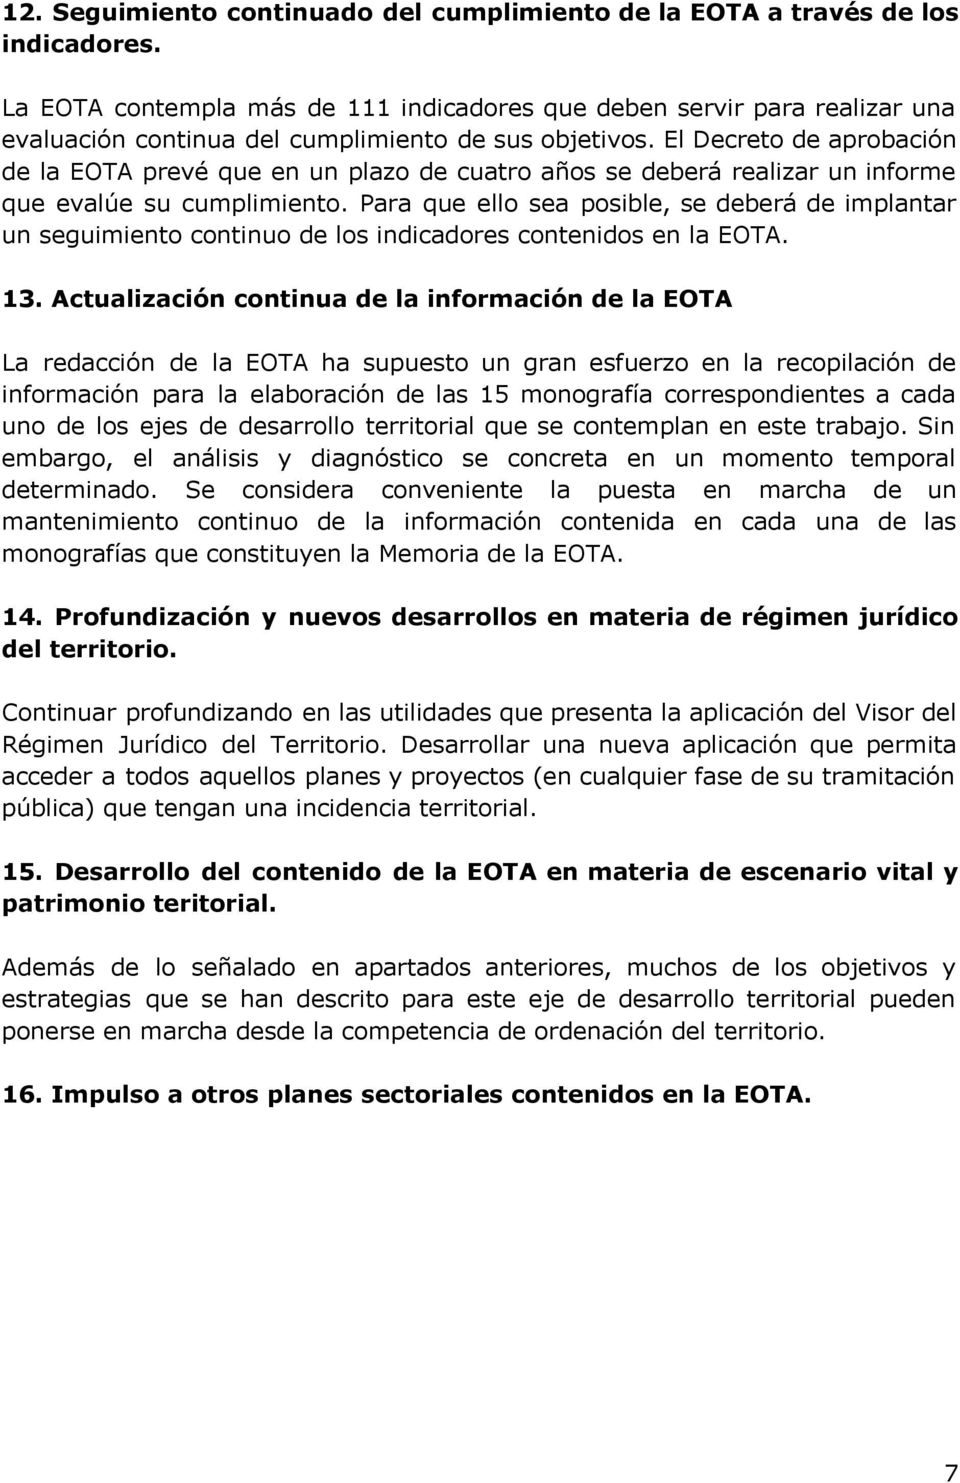 El Decreto de aprobación de la EOTA prevé que en un plazo de cuatro años se deberá realizar un informe que evalúe su cumplimiento.